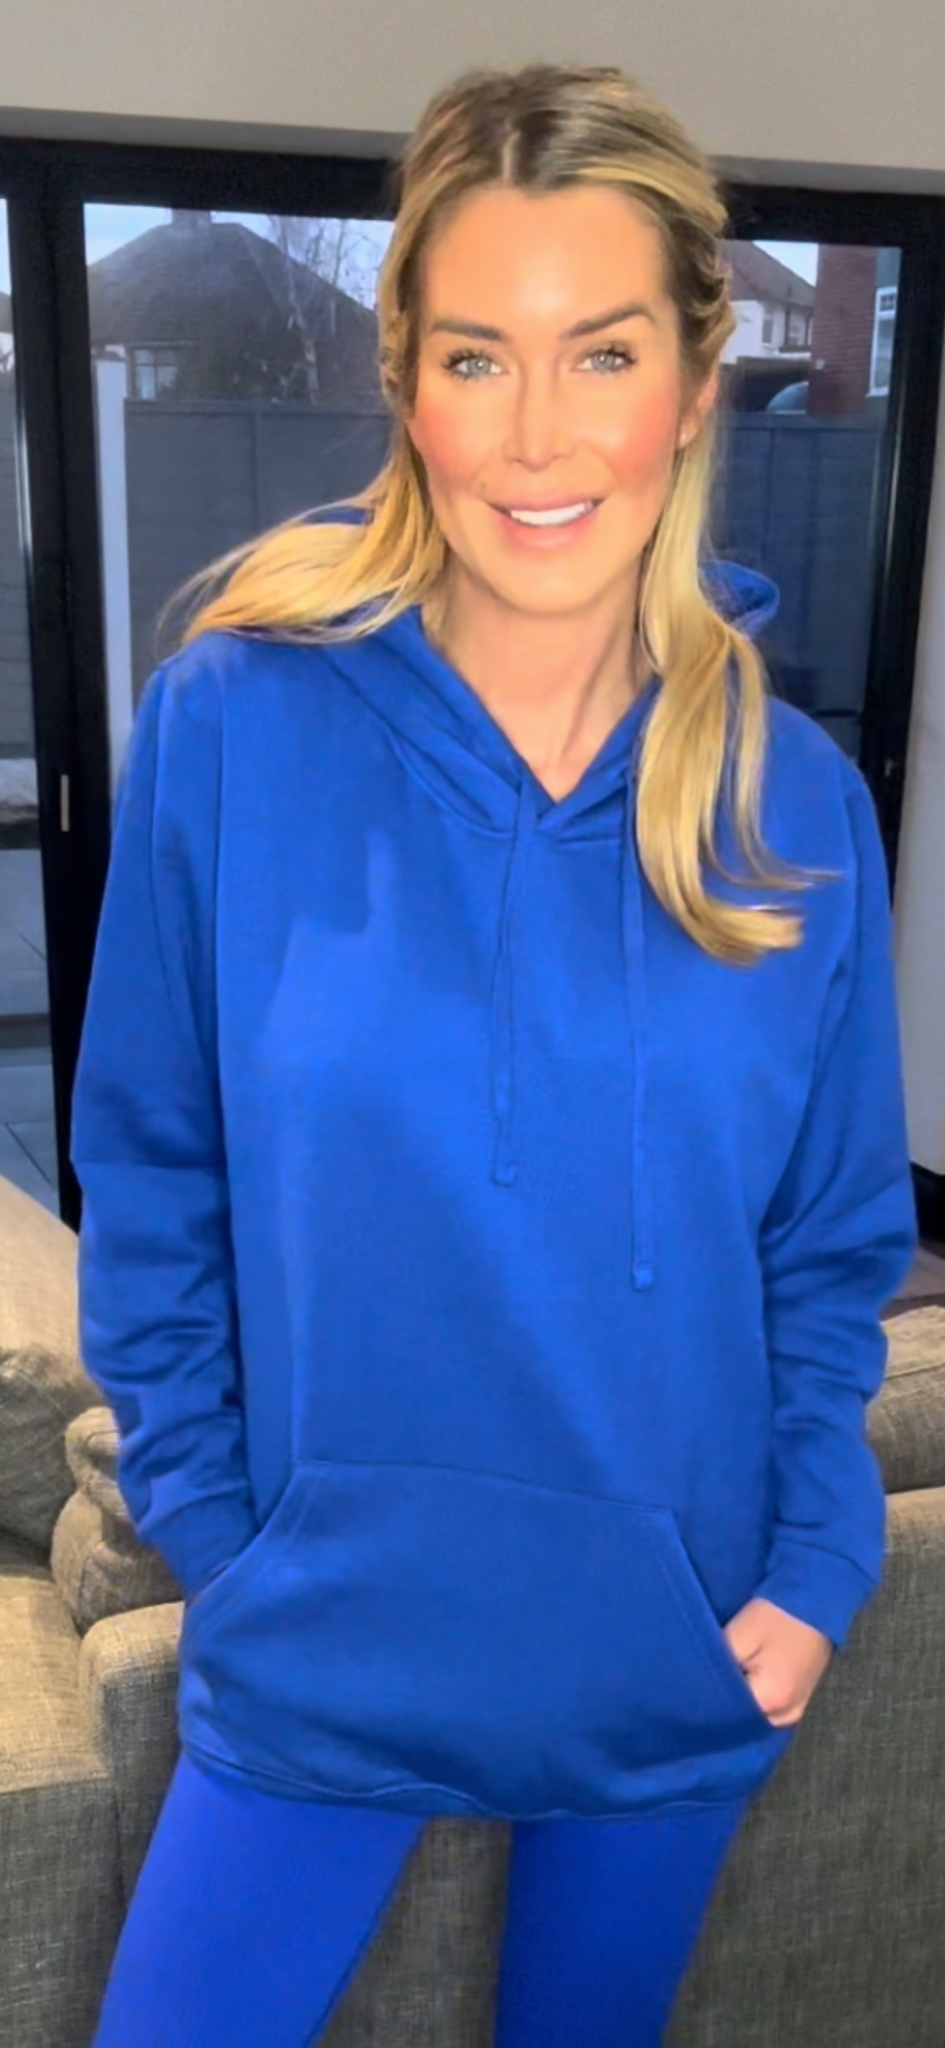 Royal blue hoodie